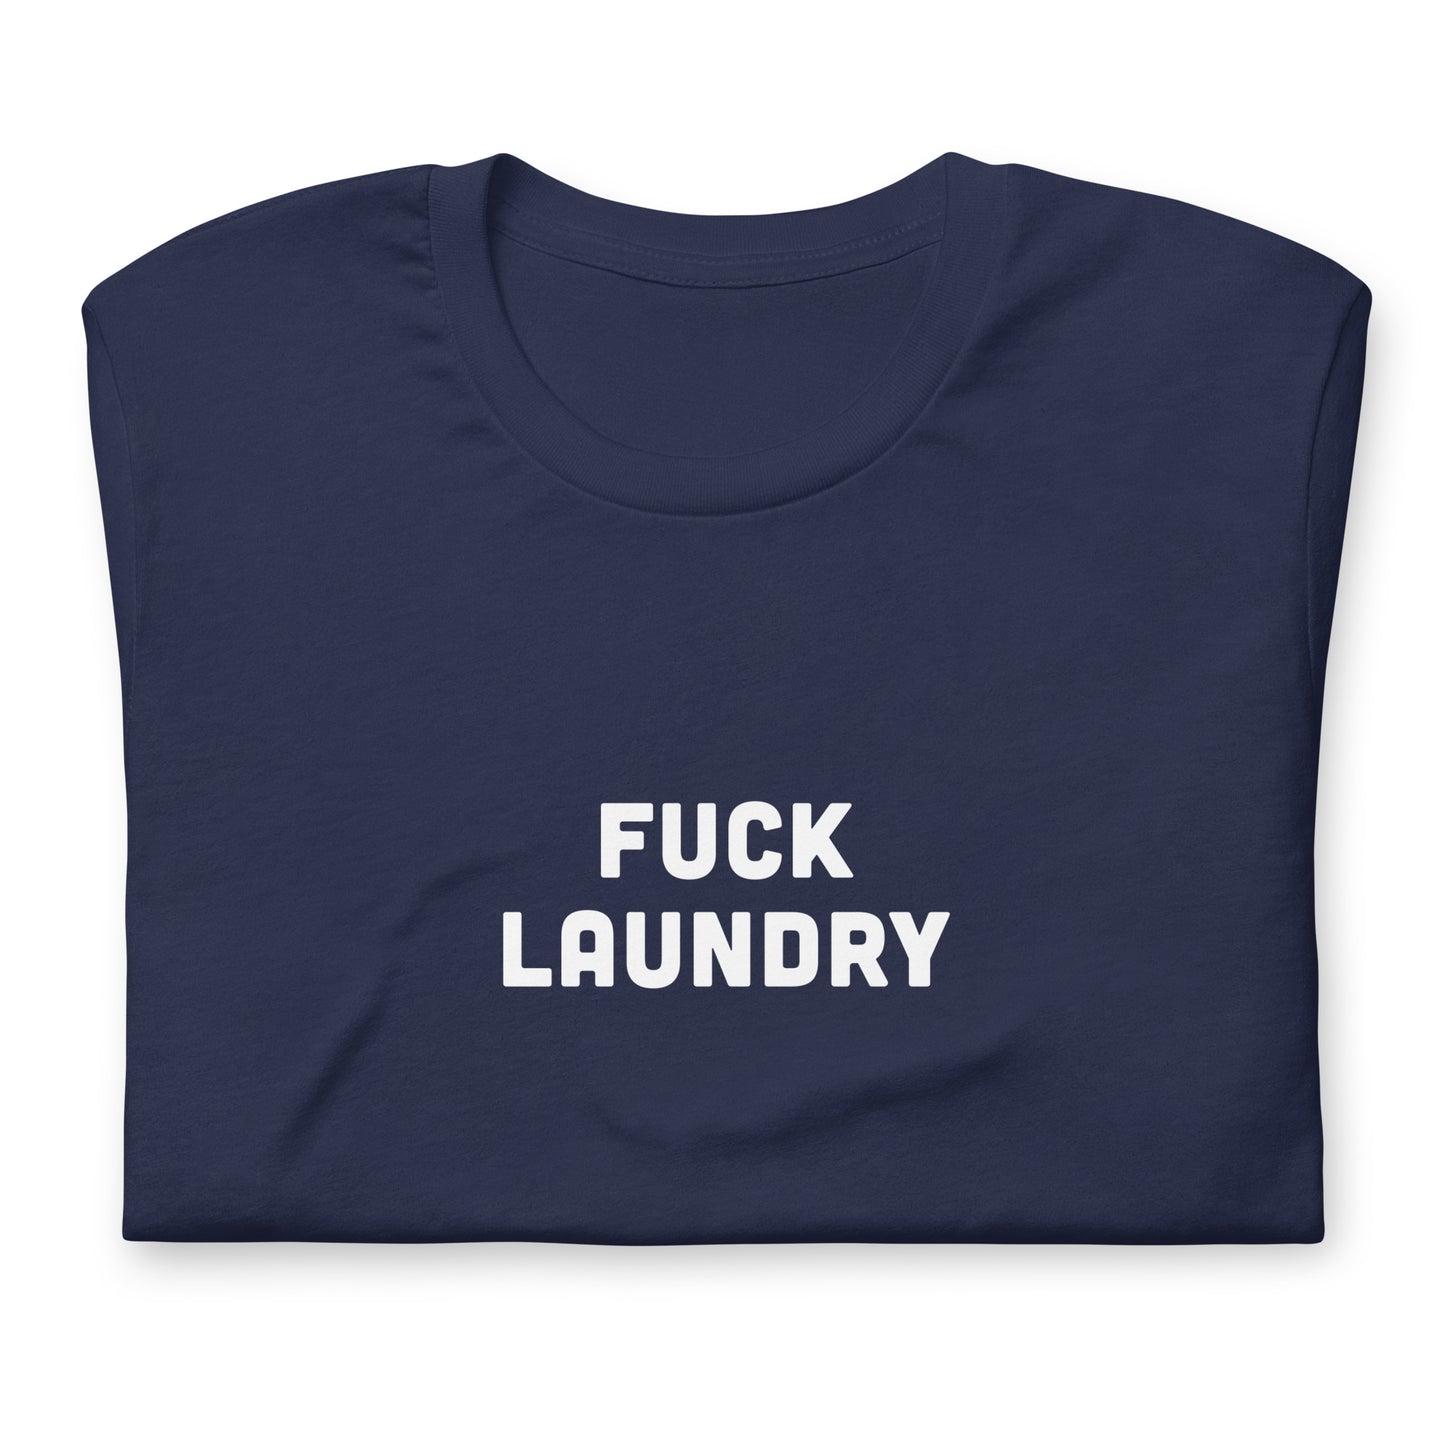 Fuck Laundry T-Shirt Size L Color Black